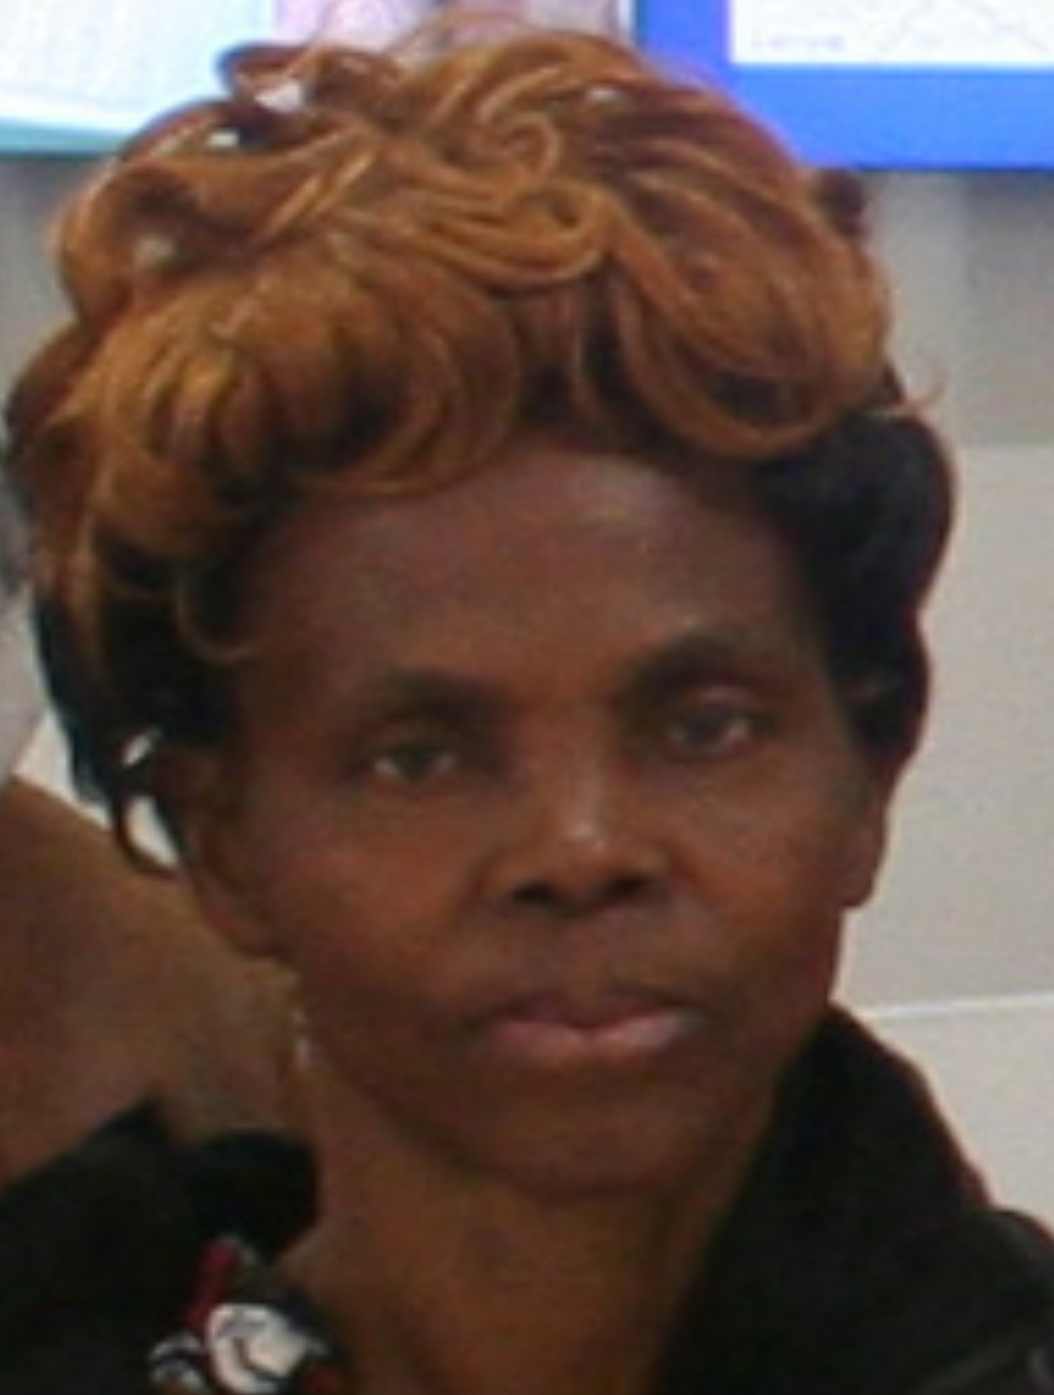 Esimonwe Kitugano